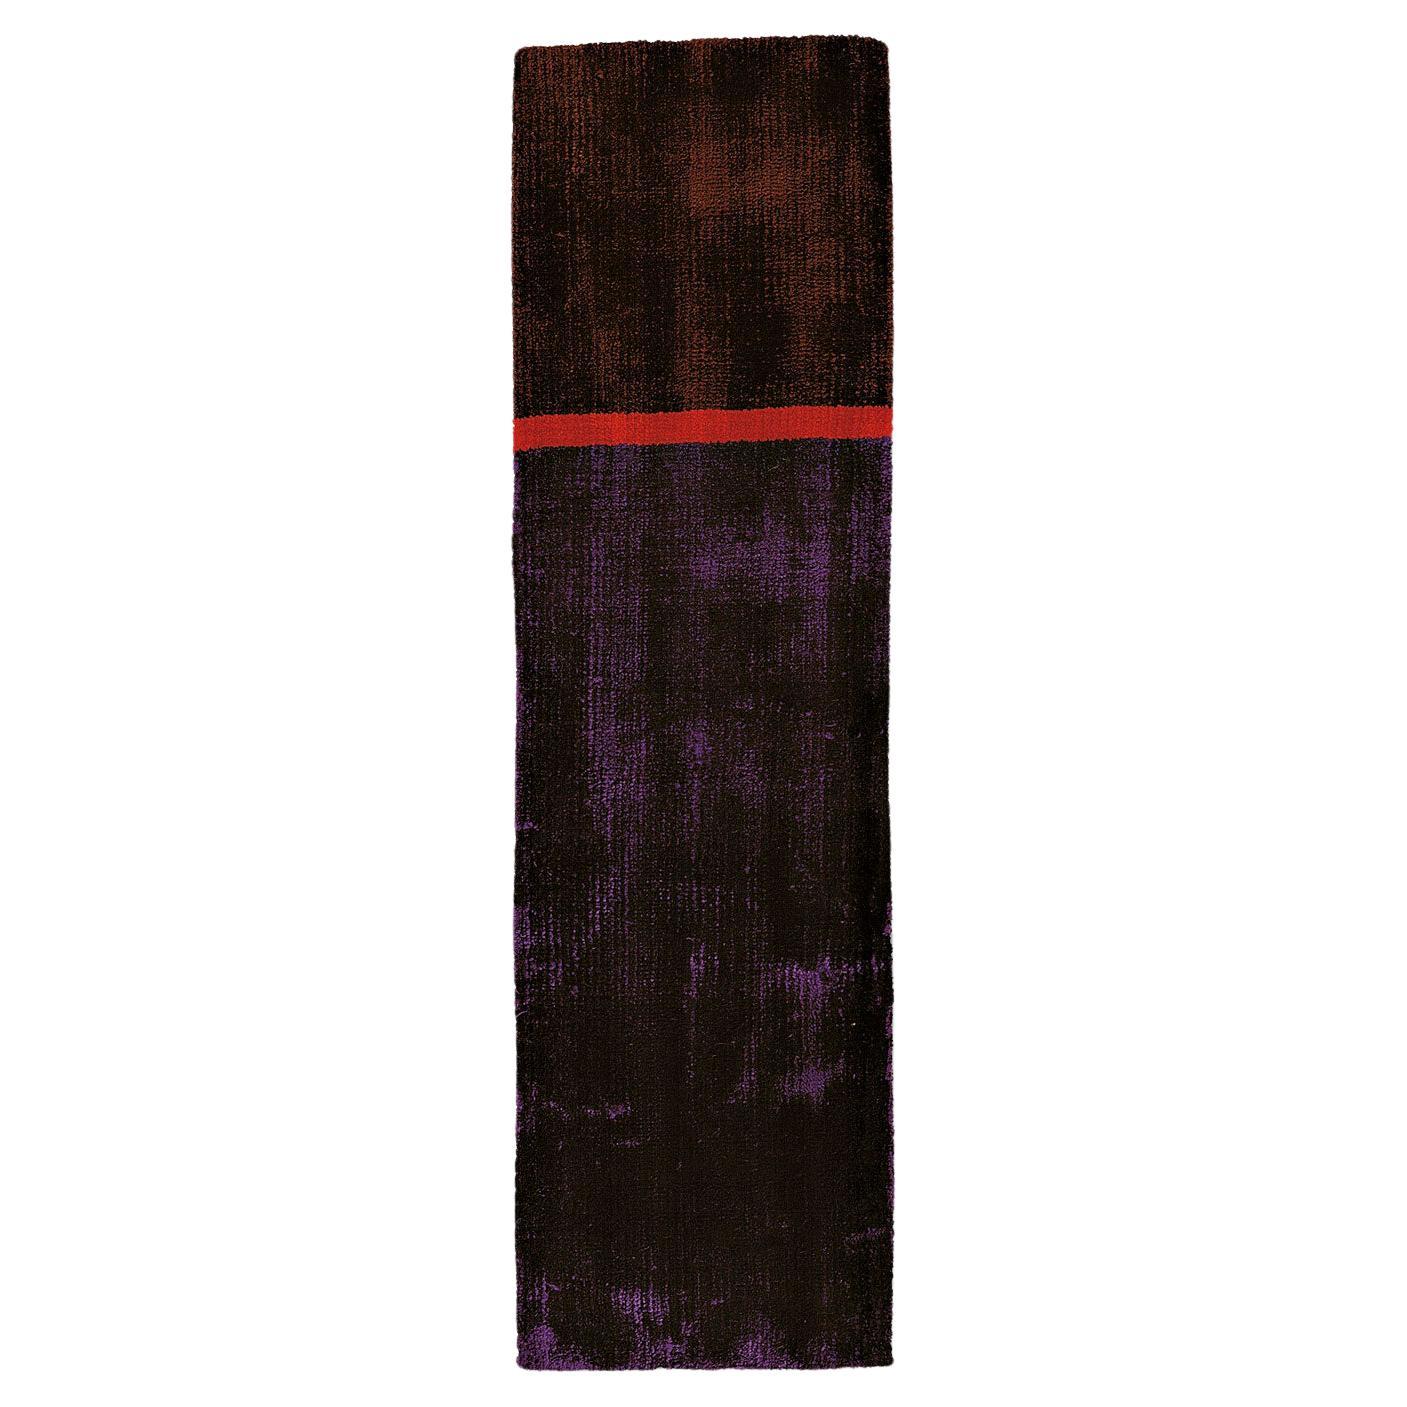 21st Cent Shiny Violet Brown Läufer Teppich von Deanna Comellini Auf Lager 60x200cm im Angebot